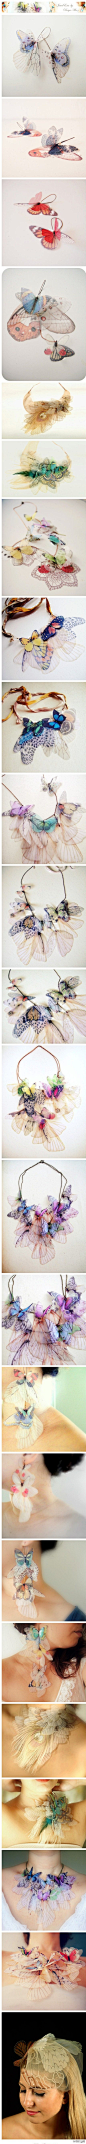 蝴蝶饰品完整版
Derya Aksoy来自美丽的伊斯坦布尔，在过去七年创造了迷人的珠宝首饰。她从蝴蝶收集，转变到用纱织物来表现蝴蝶和飞蛾翅膀的图案，创建了独特的珠宝作品，似乎直接来自一个童话。